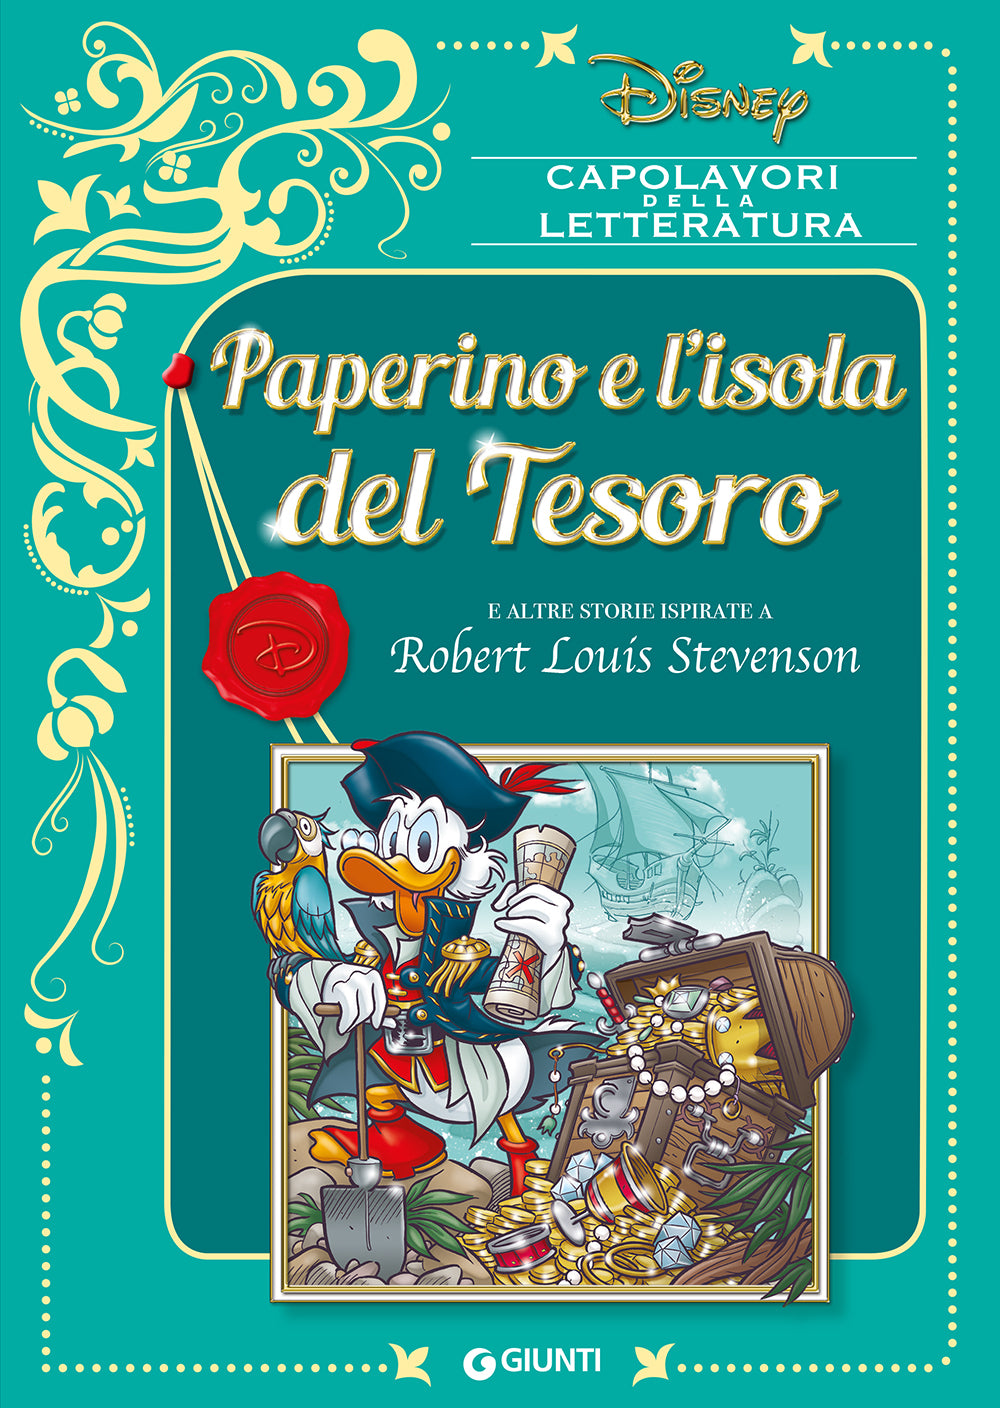 Paperino e l'isola del Tesoro::E altre storie ispirate a Robert Louis Stevenson